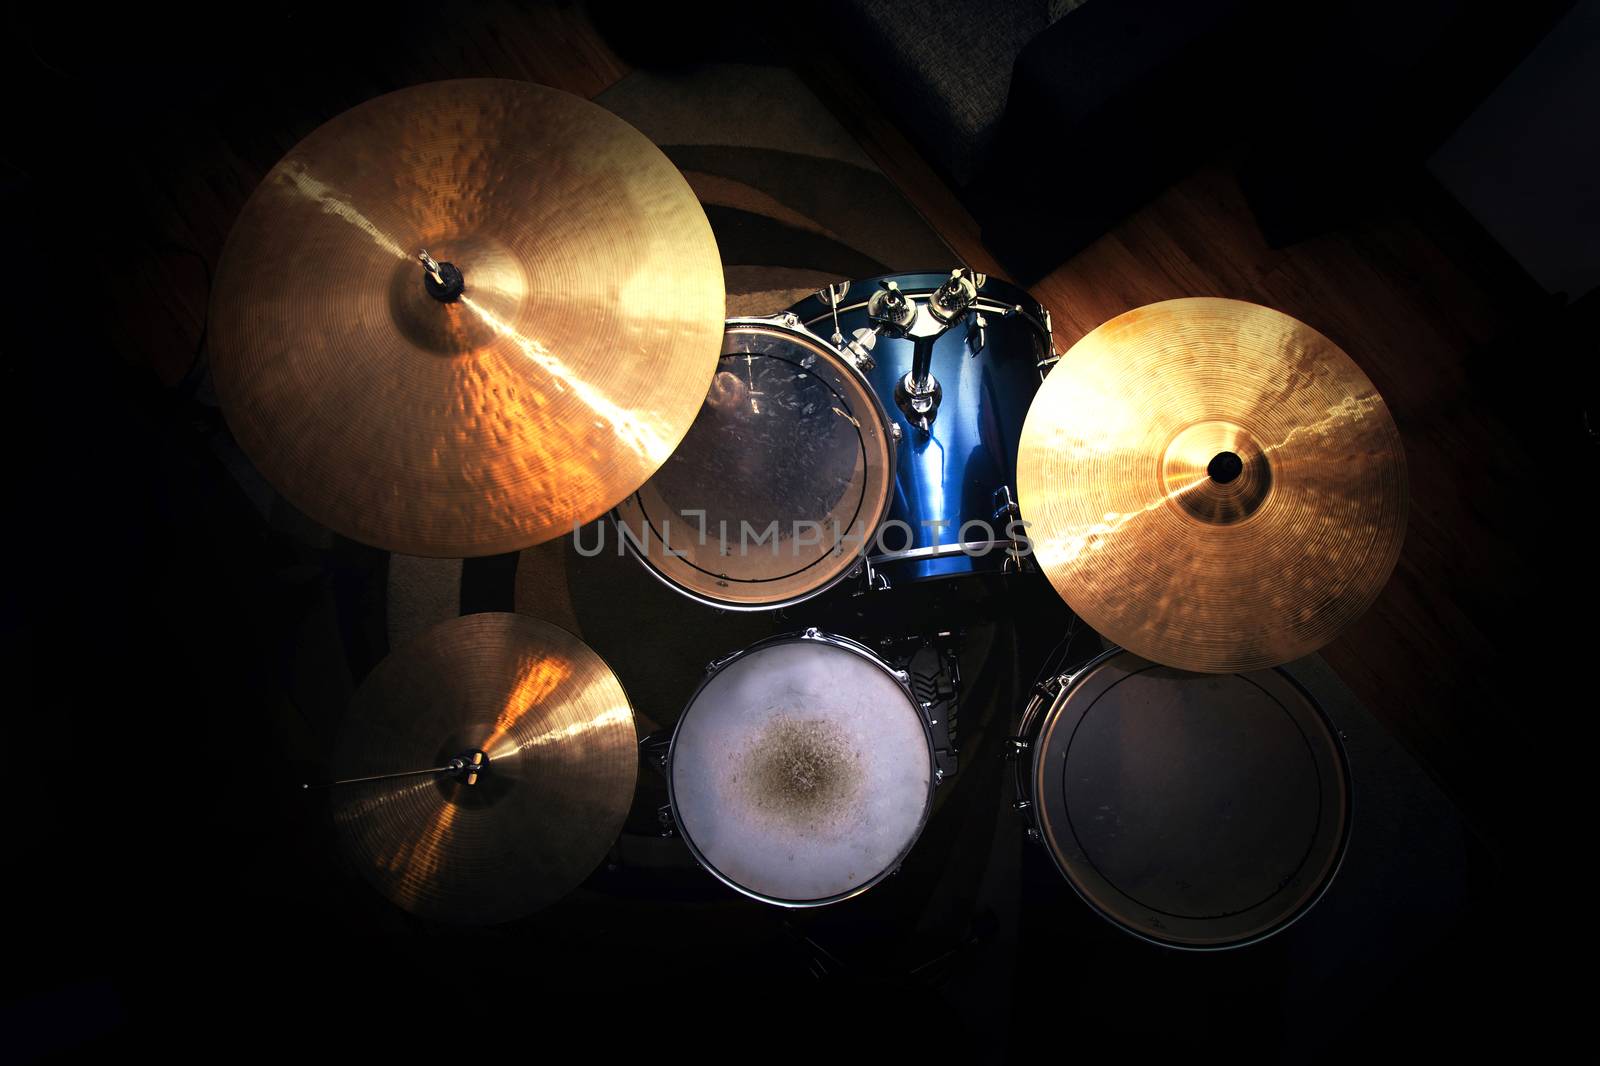 Drums conceptual image. by satariel